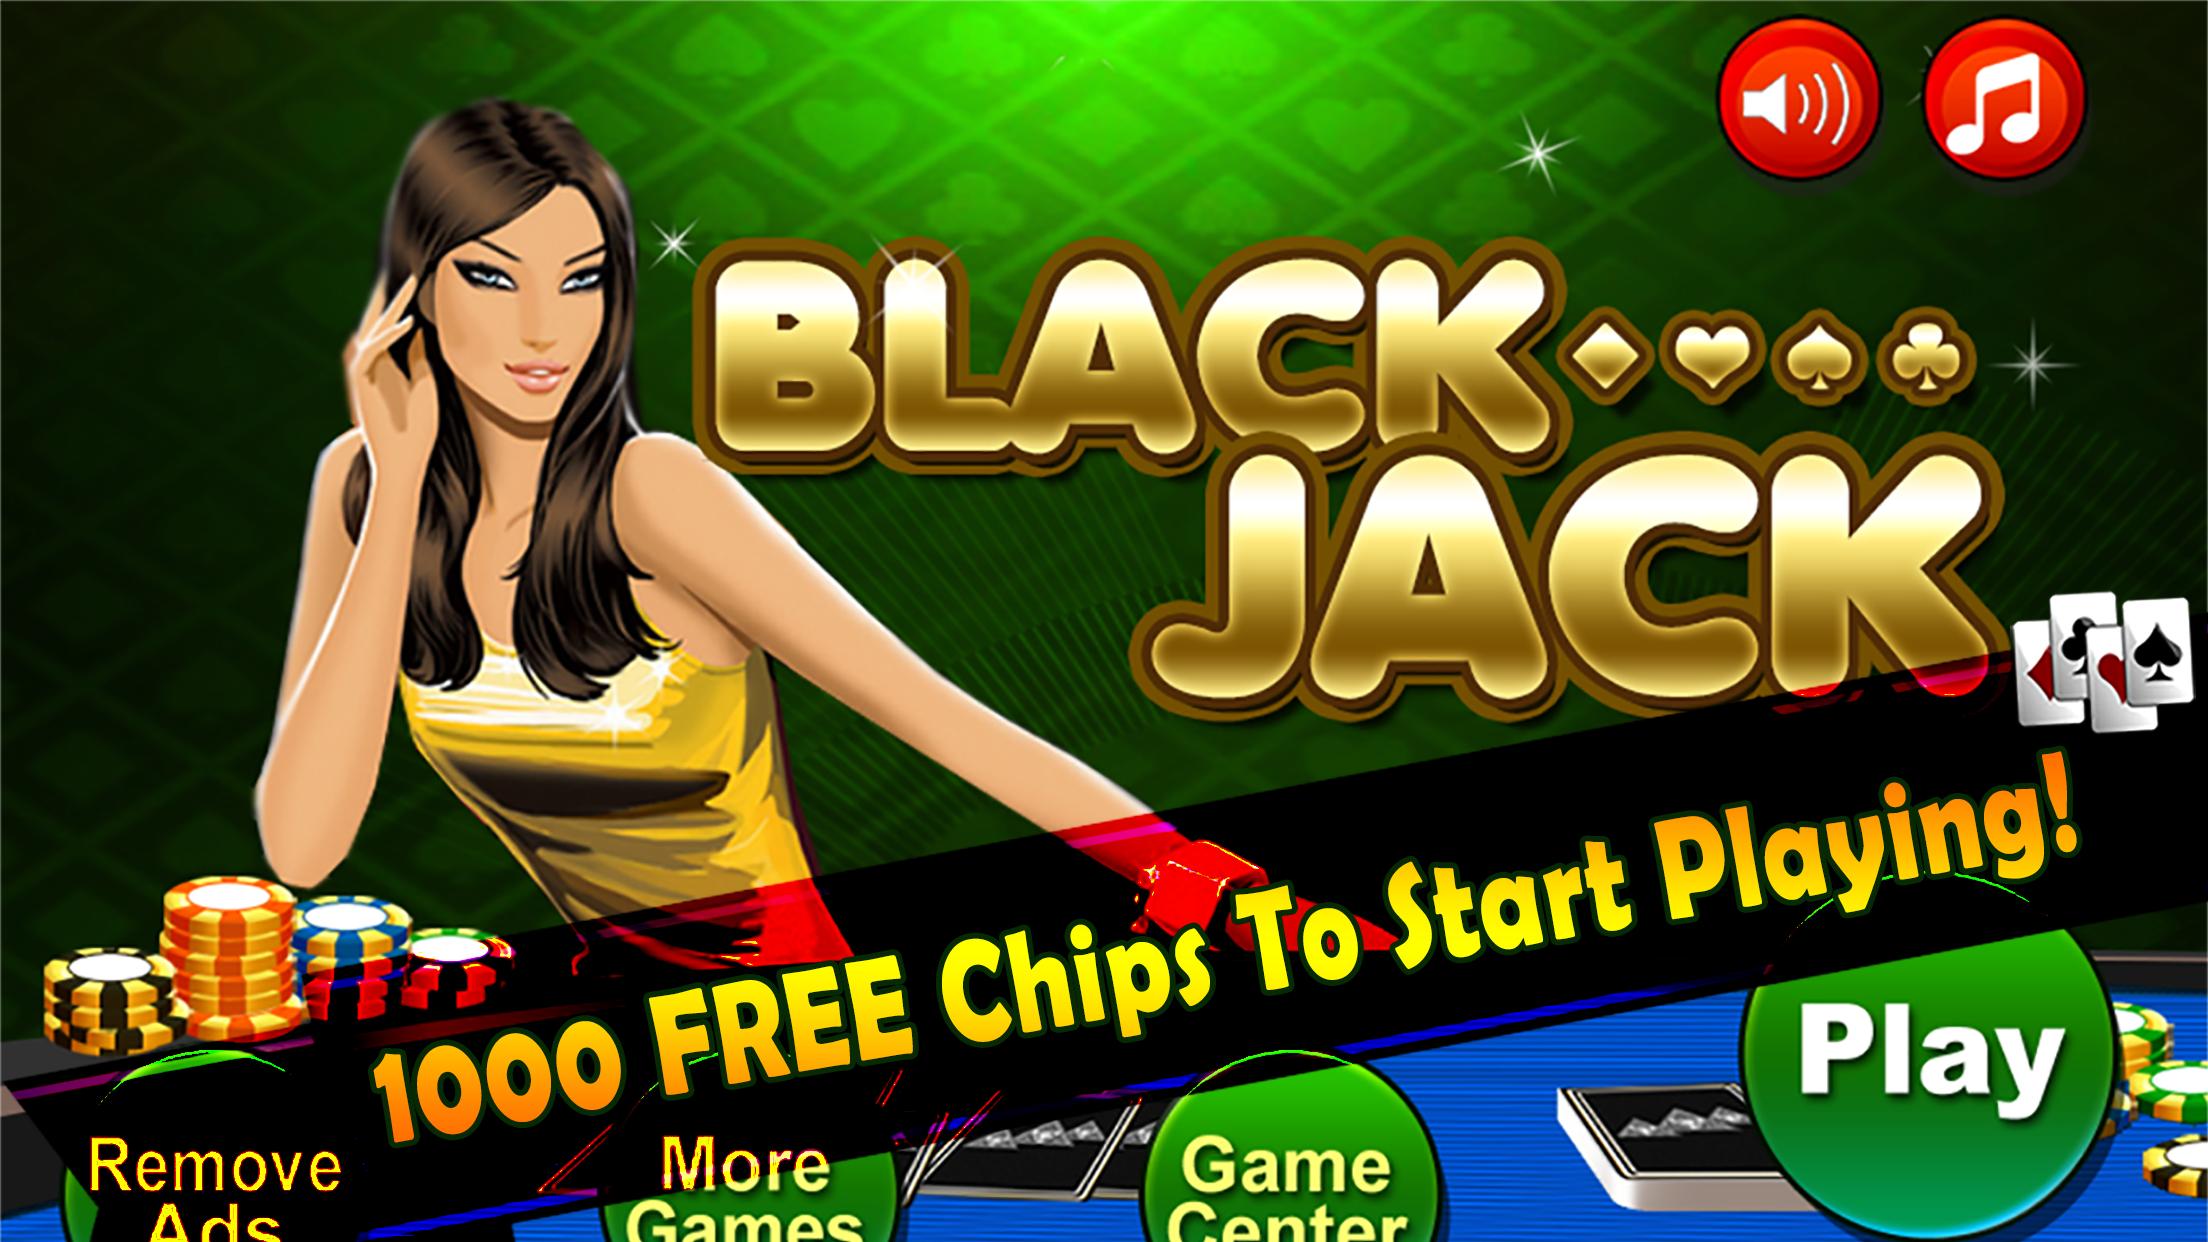 Blackjack 21 Pontoon Card Game For Android Apk Download